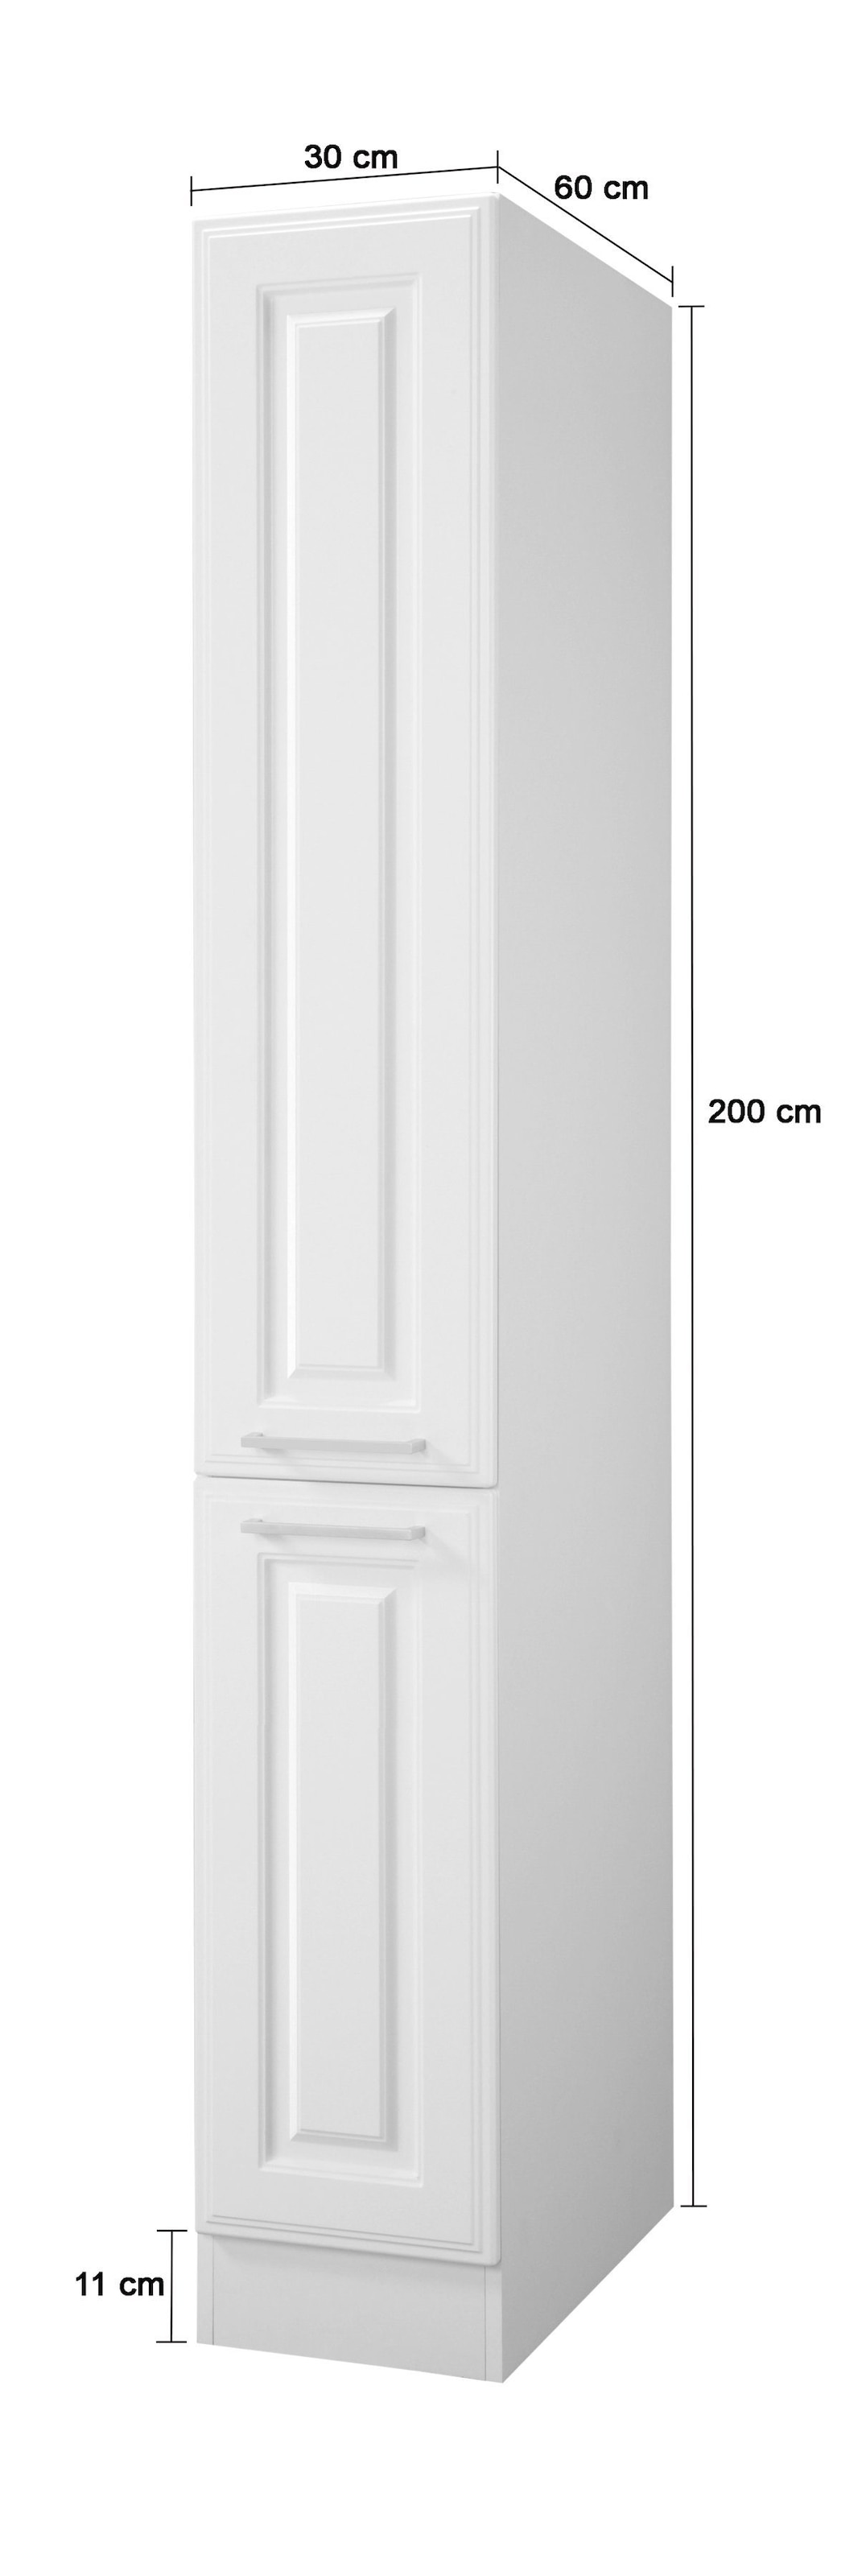 HELD MÖBEL Apothekerschrank »Stockholm, Breite 30 cm«, hochwertige MDF-Fronten, 200 cm hoch, viel Stauraum